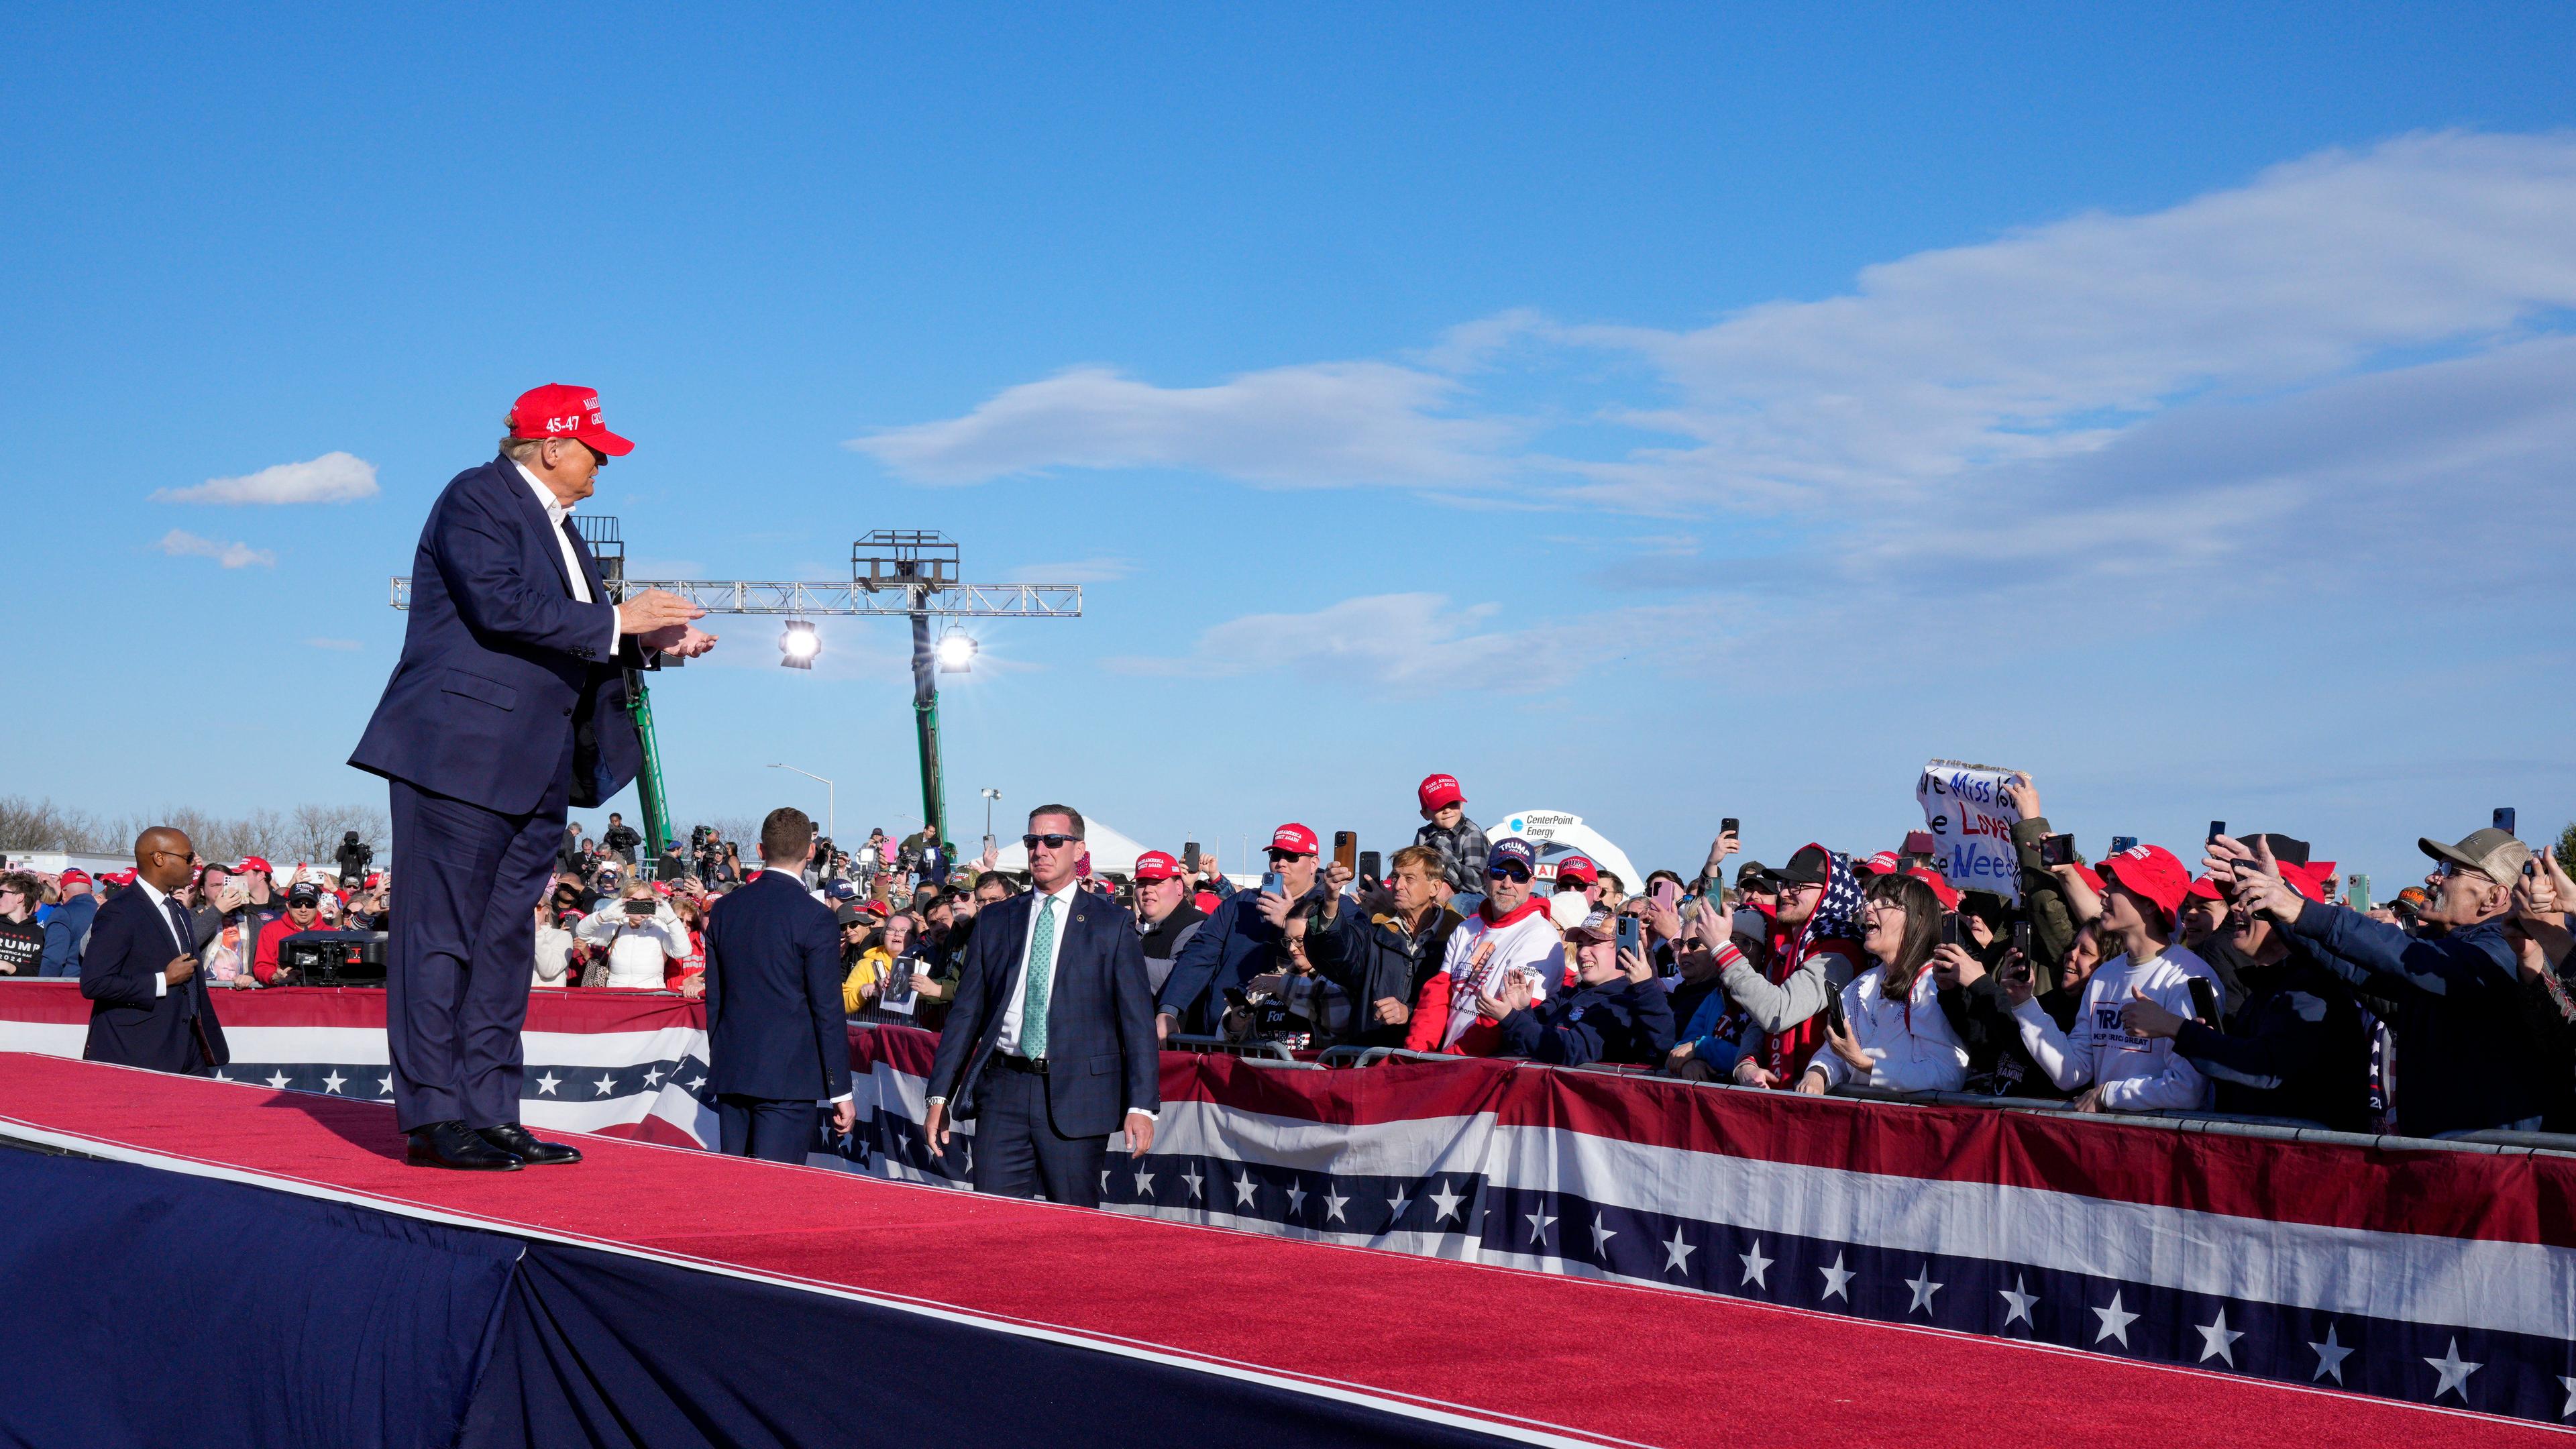 Donald Trump gestikuliert nach einer Wahlkampfveranstaltung am Samstag, 16.03.2024, in Ohio, in die Menge.